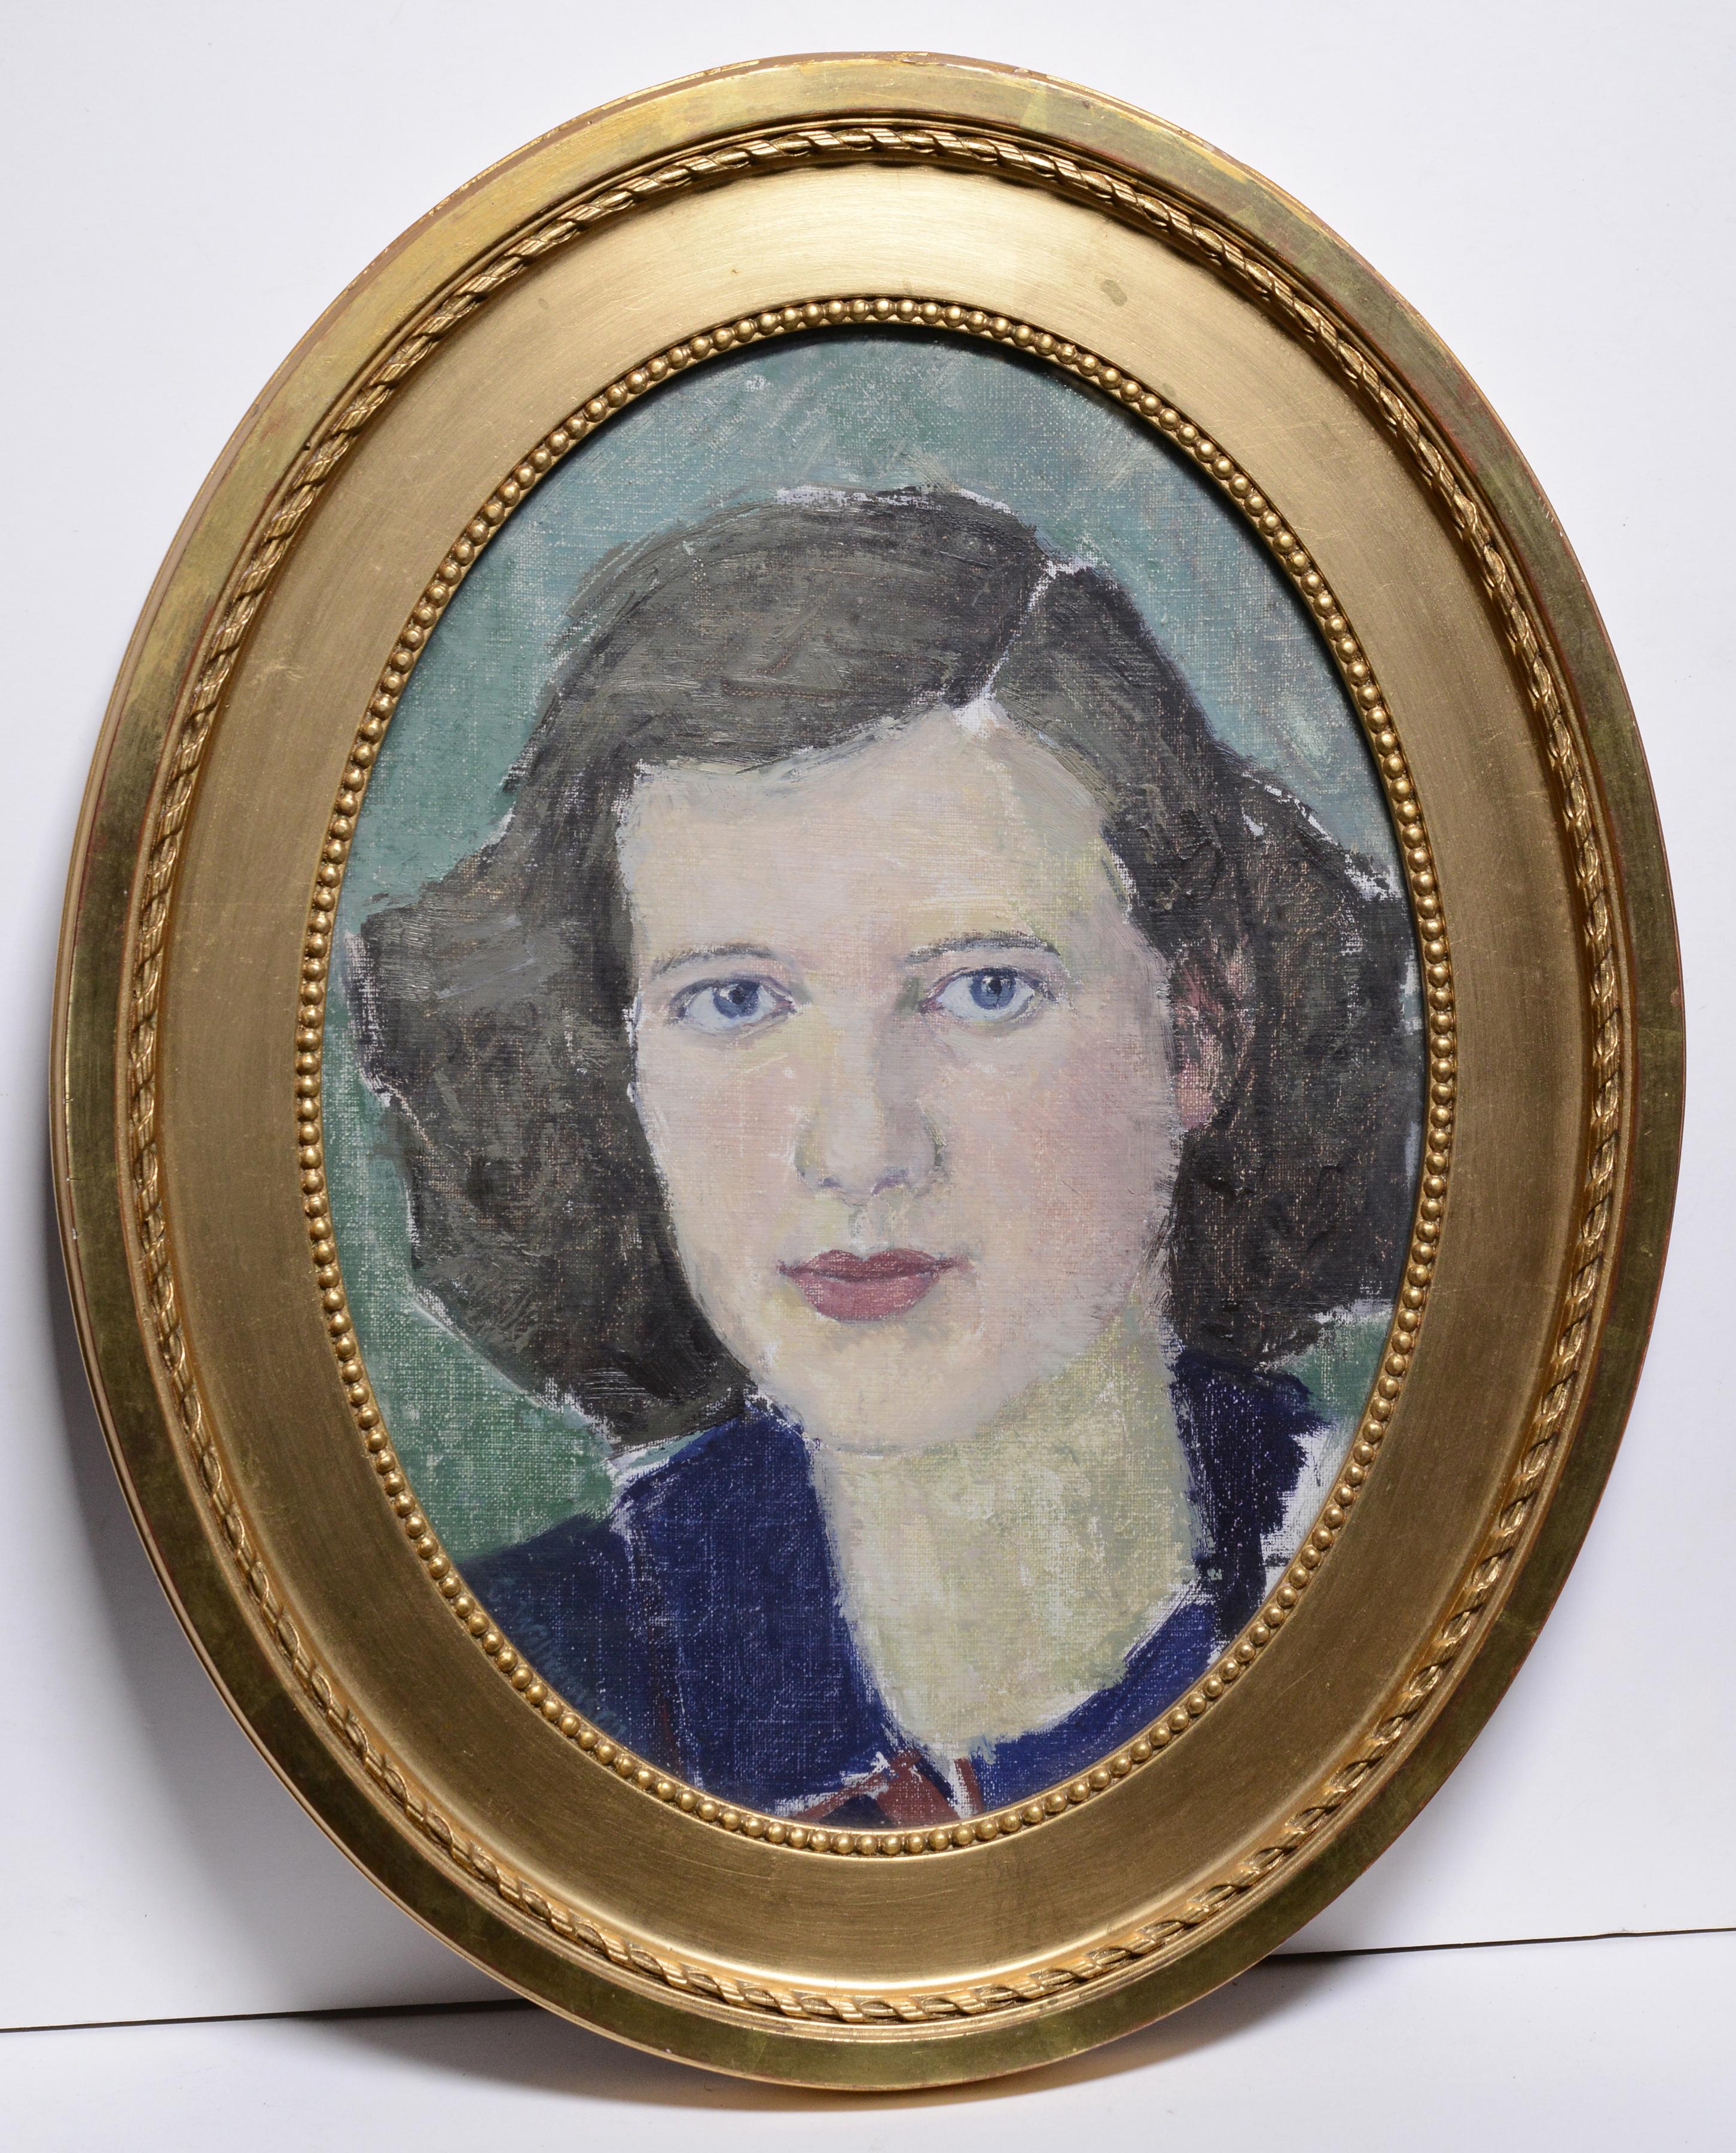 Unknown Portrait Painting – Blau-gelbes Porträt einer jungen Frau, gerahmt, oval, von schwedischem Meister, frühes 20. Jahrhundert